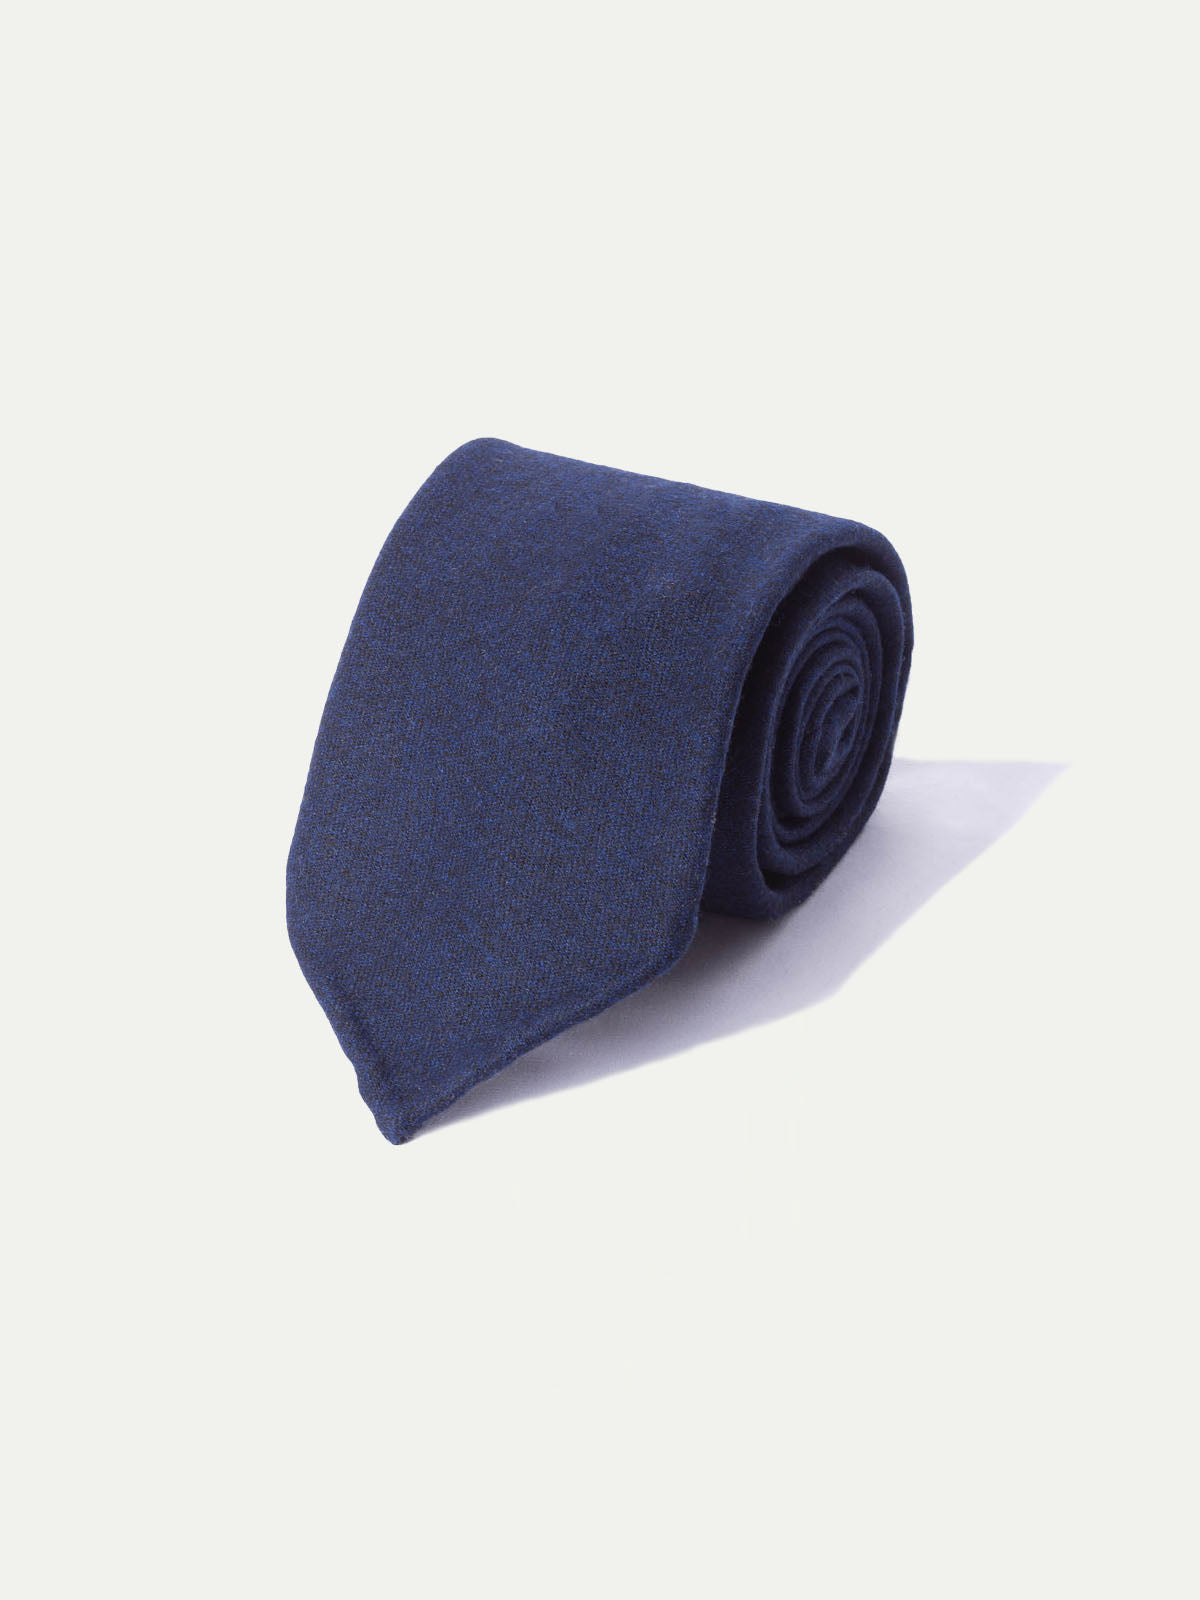 blue flannel tie, cravate bleue en flanelle